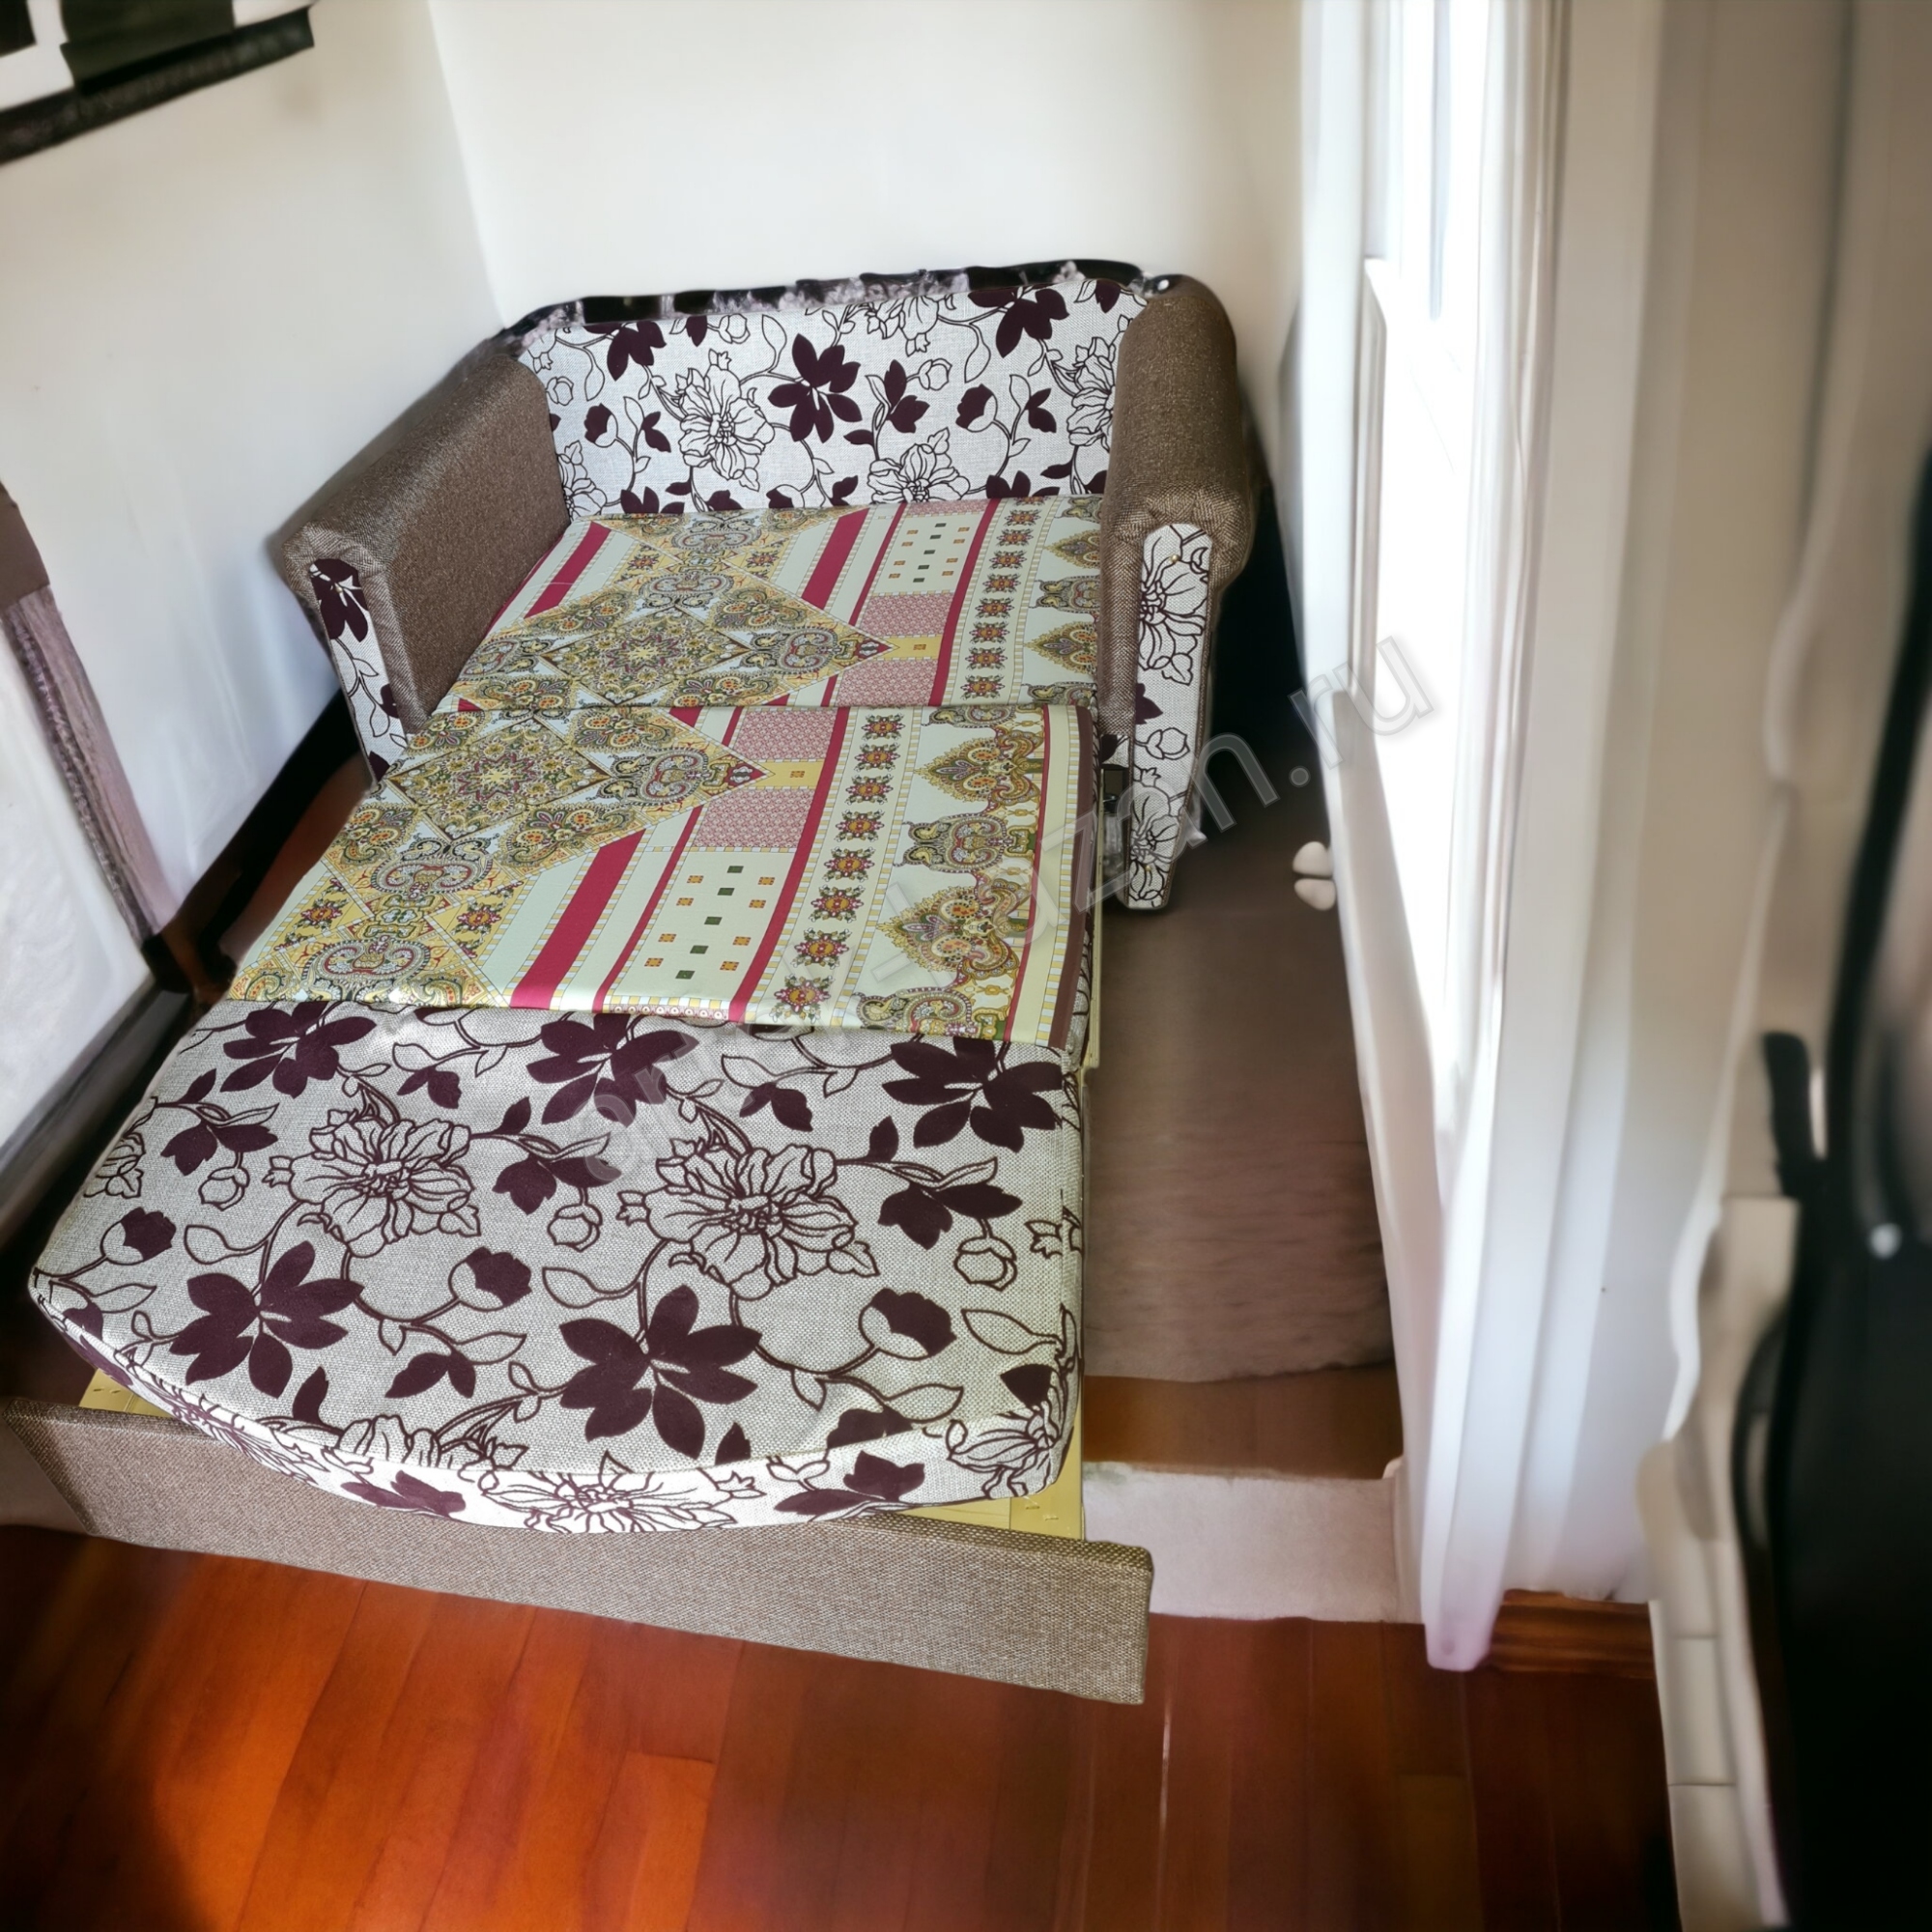 впередвыкатной диван Лика фото № 12. Купить недорогой диван по низкой цене от производителя можно у нас.